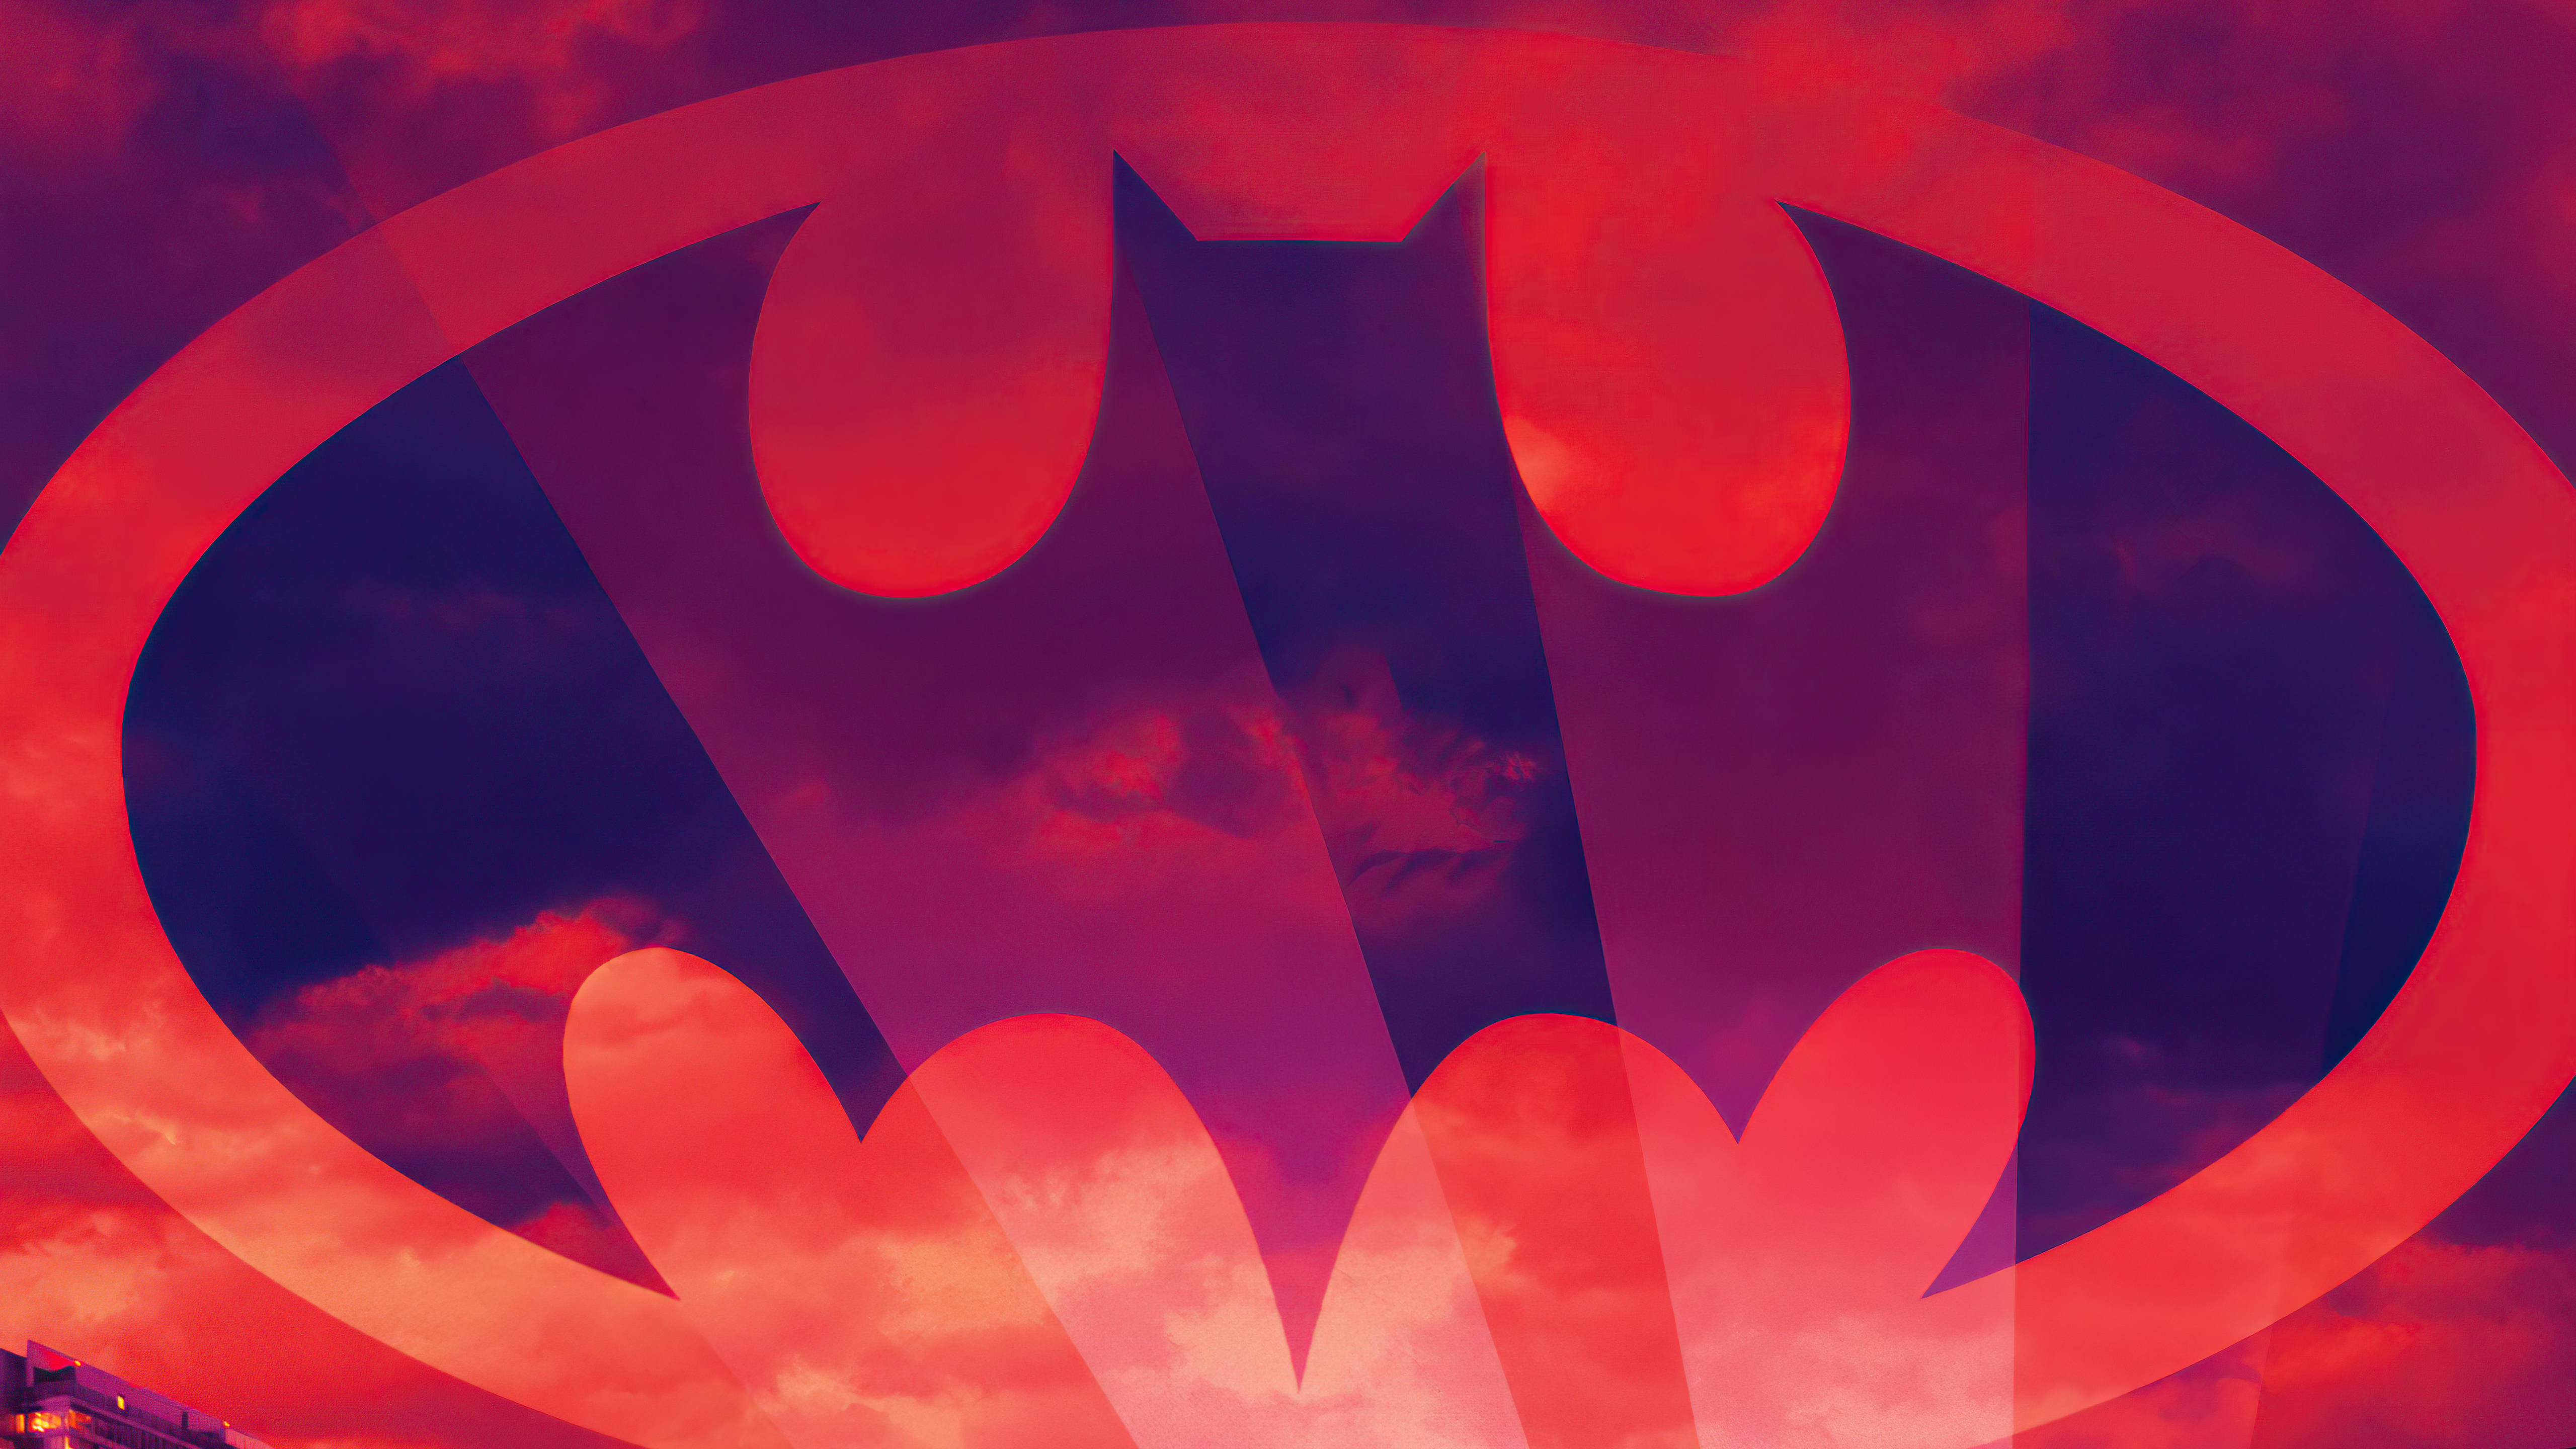 Скачать обои бесплатно Комиксы, Бэтмен, Логотип Бэтмена, Комиксы Dc картинка на рабочий стол ПК